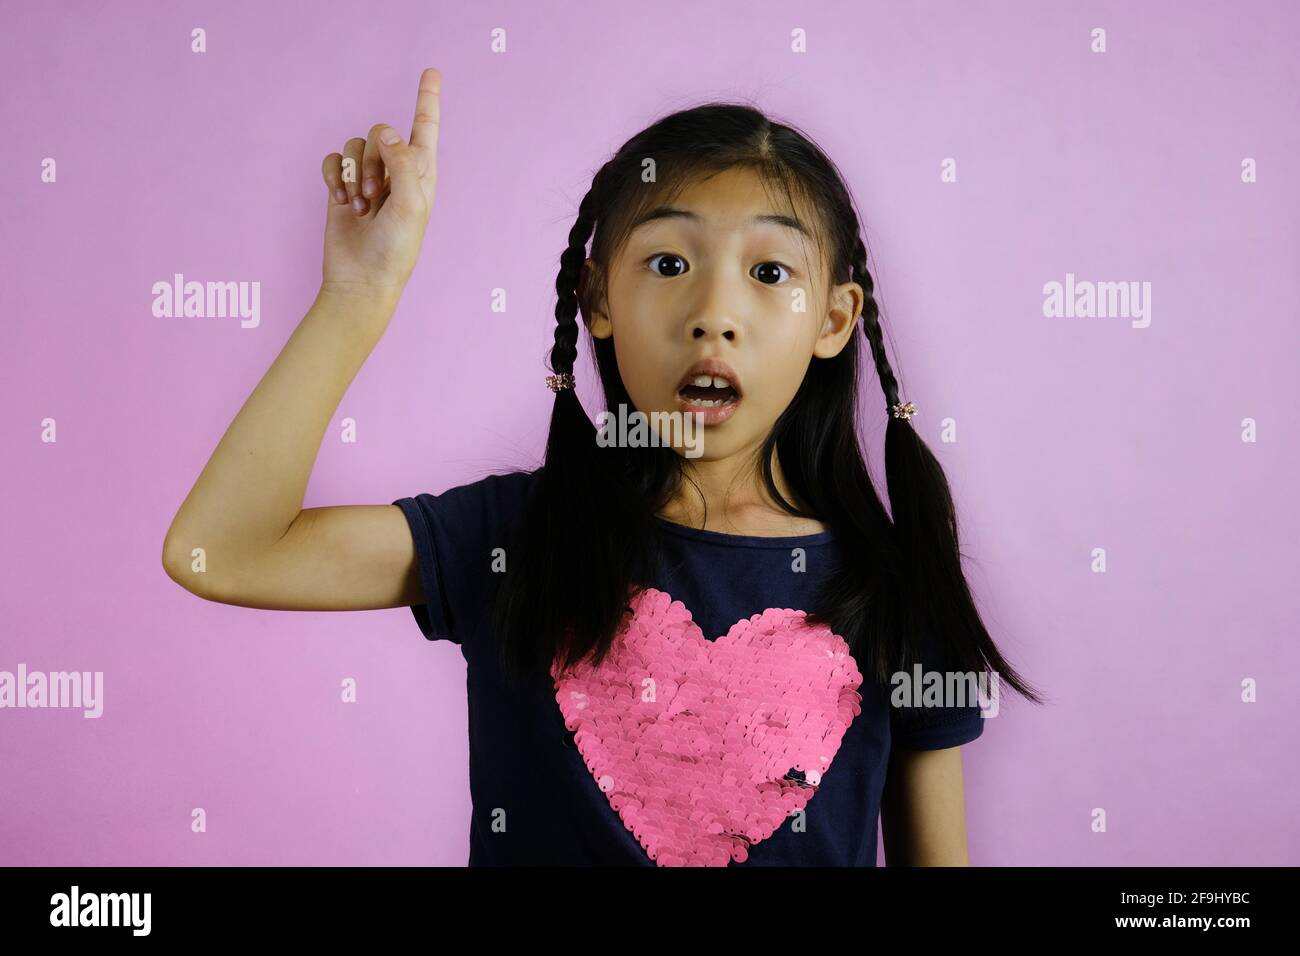 Une jeune fille asiatique mignonne gestuelle qu'elle a une idée en pointant son doigt vers le haut avec un visage confiant. Fond rose vif. Banque D'Images